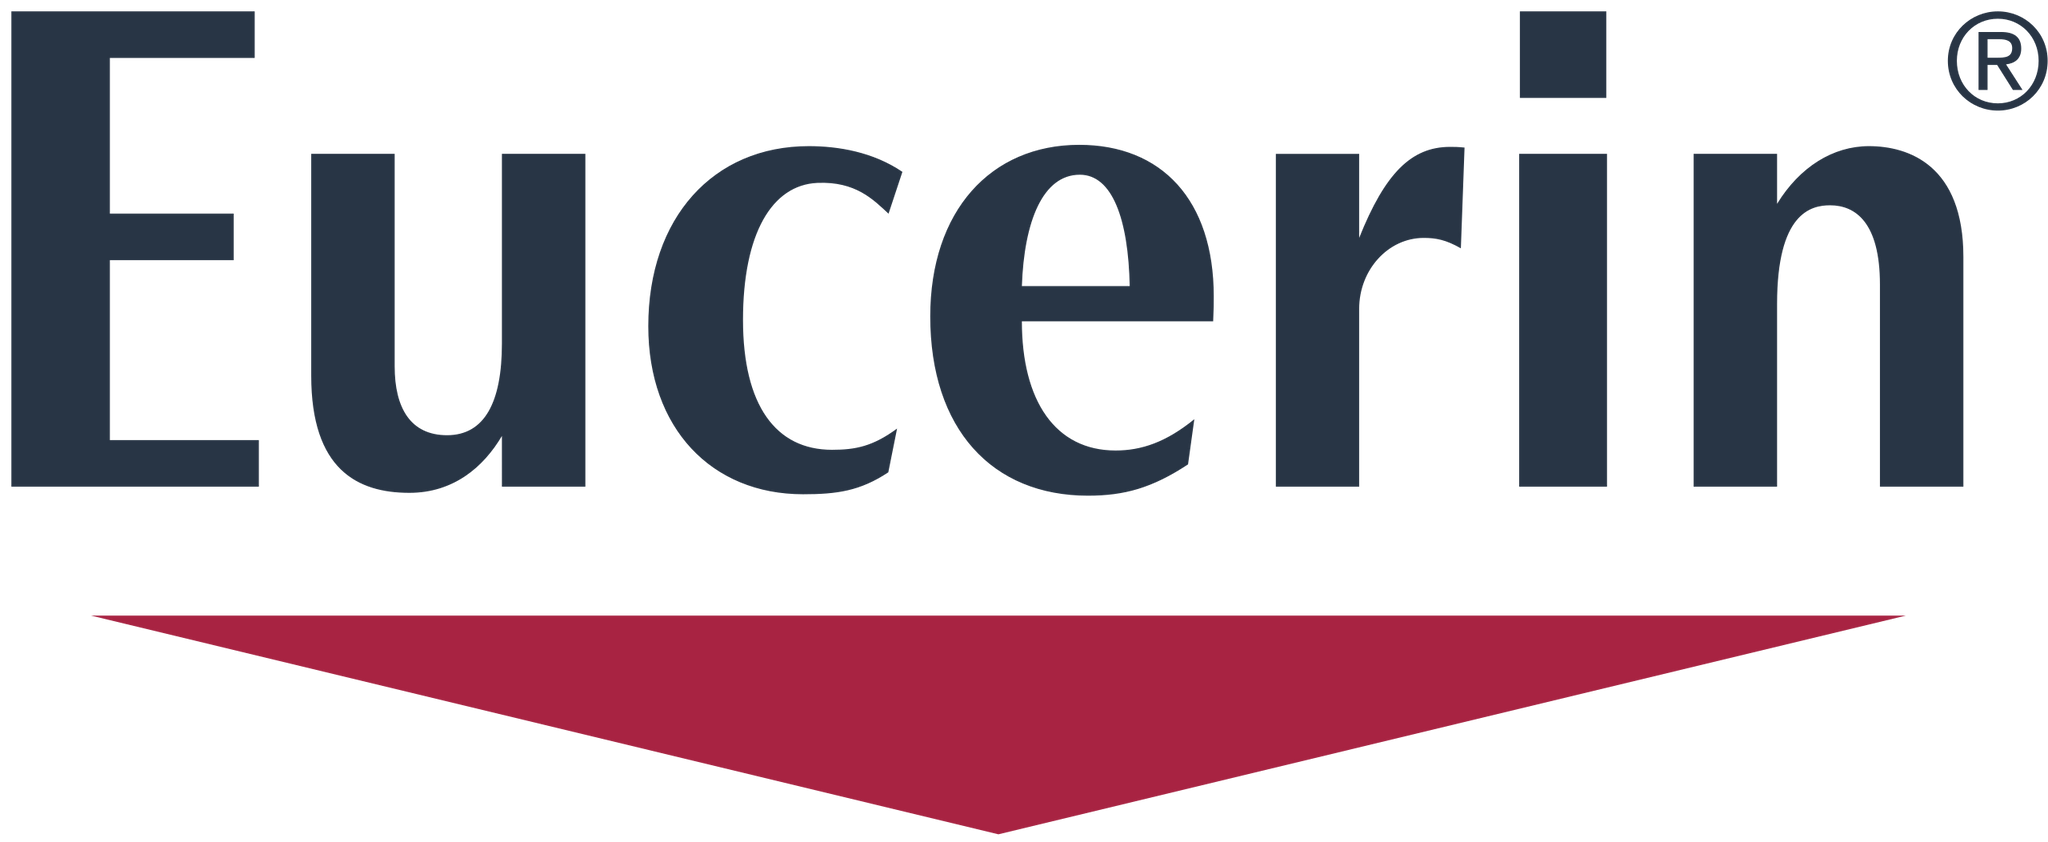 Eucerin_logo